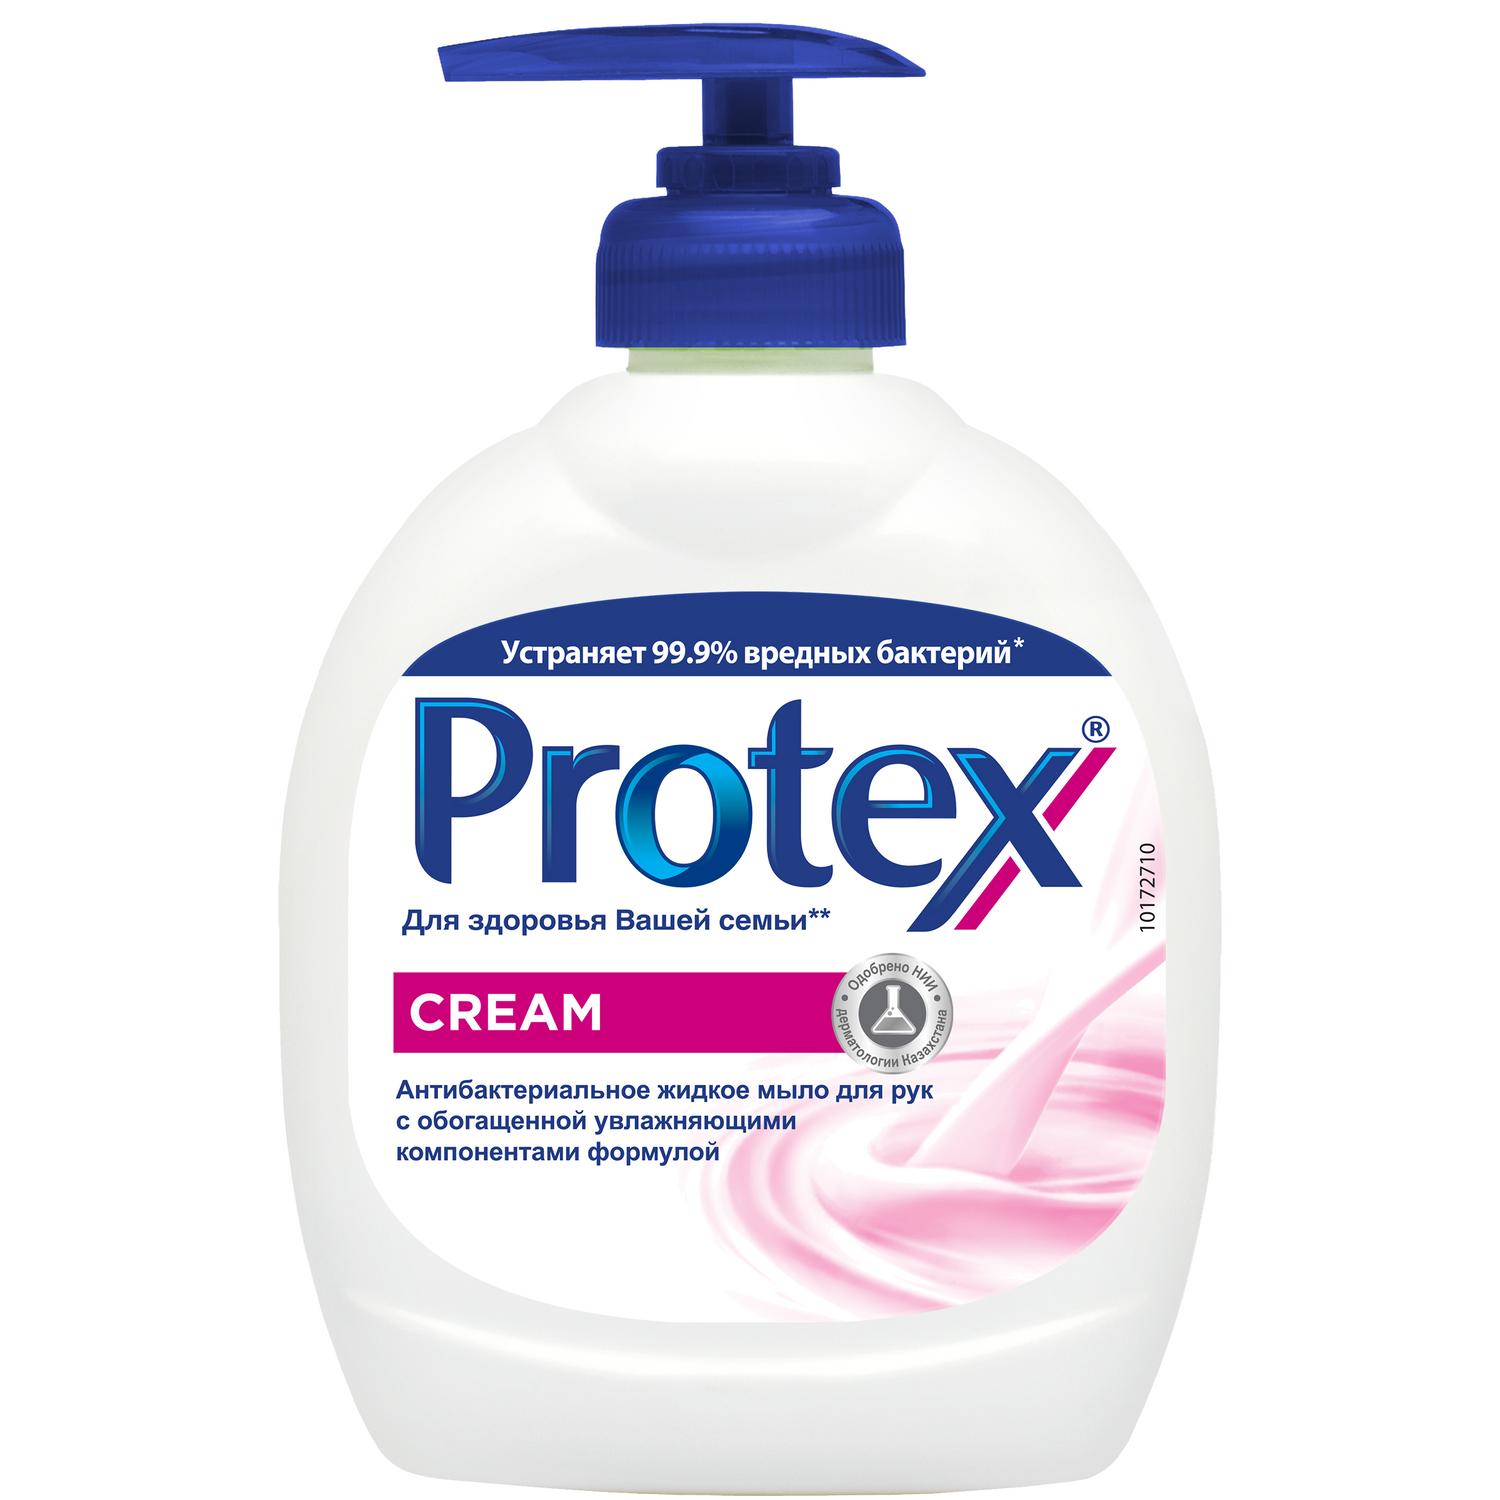 Protex Антибактериальное жидкое мыло для рук Cream, 300 мл жидкое мыло protex cream антибактериальное 300 мл